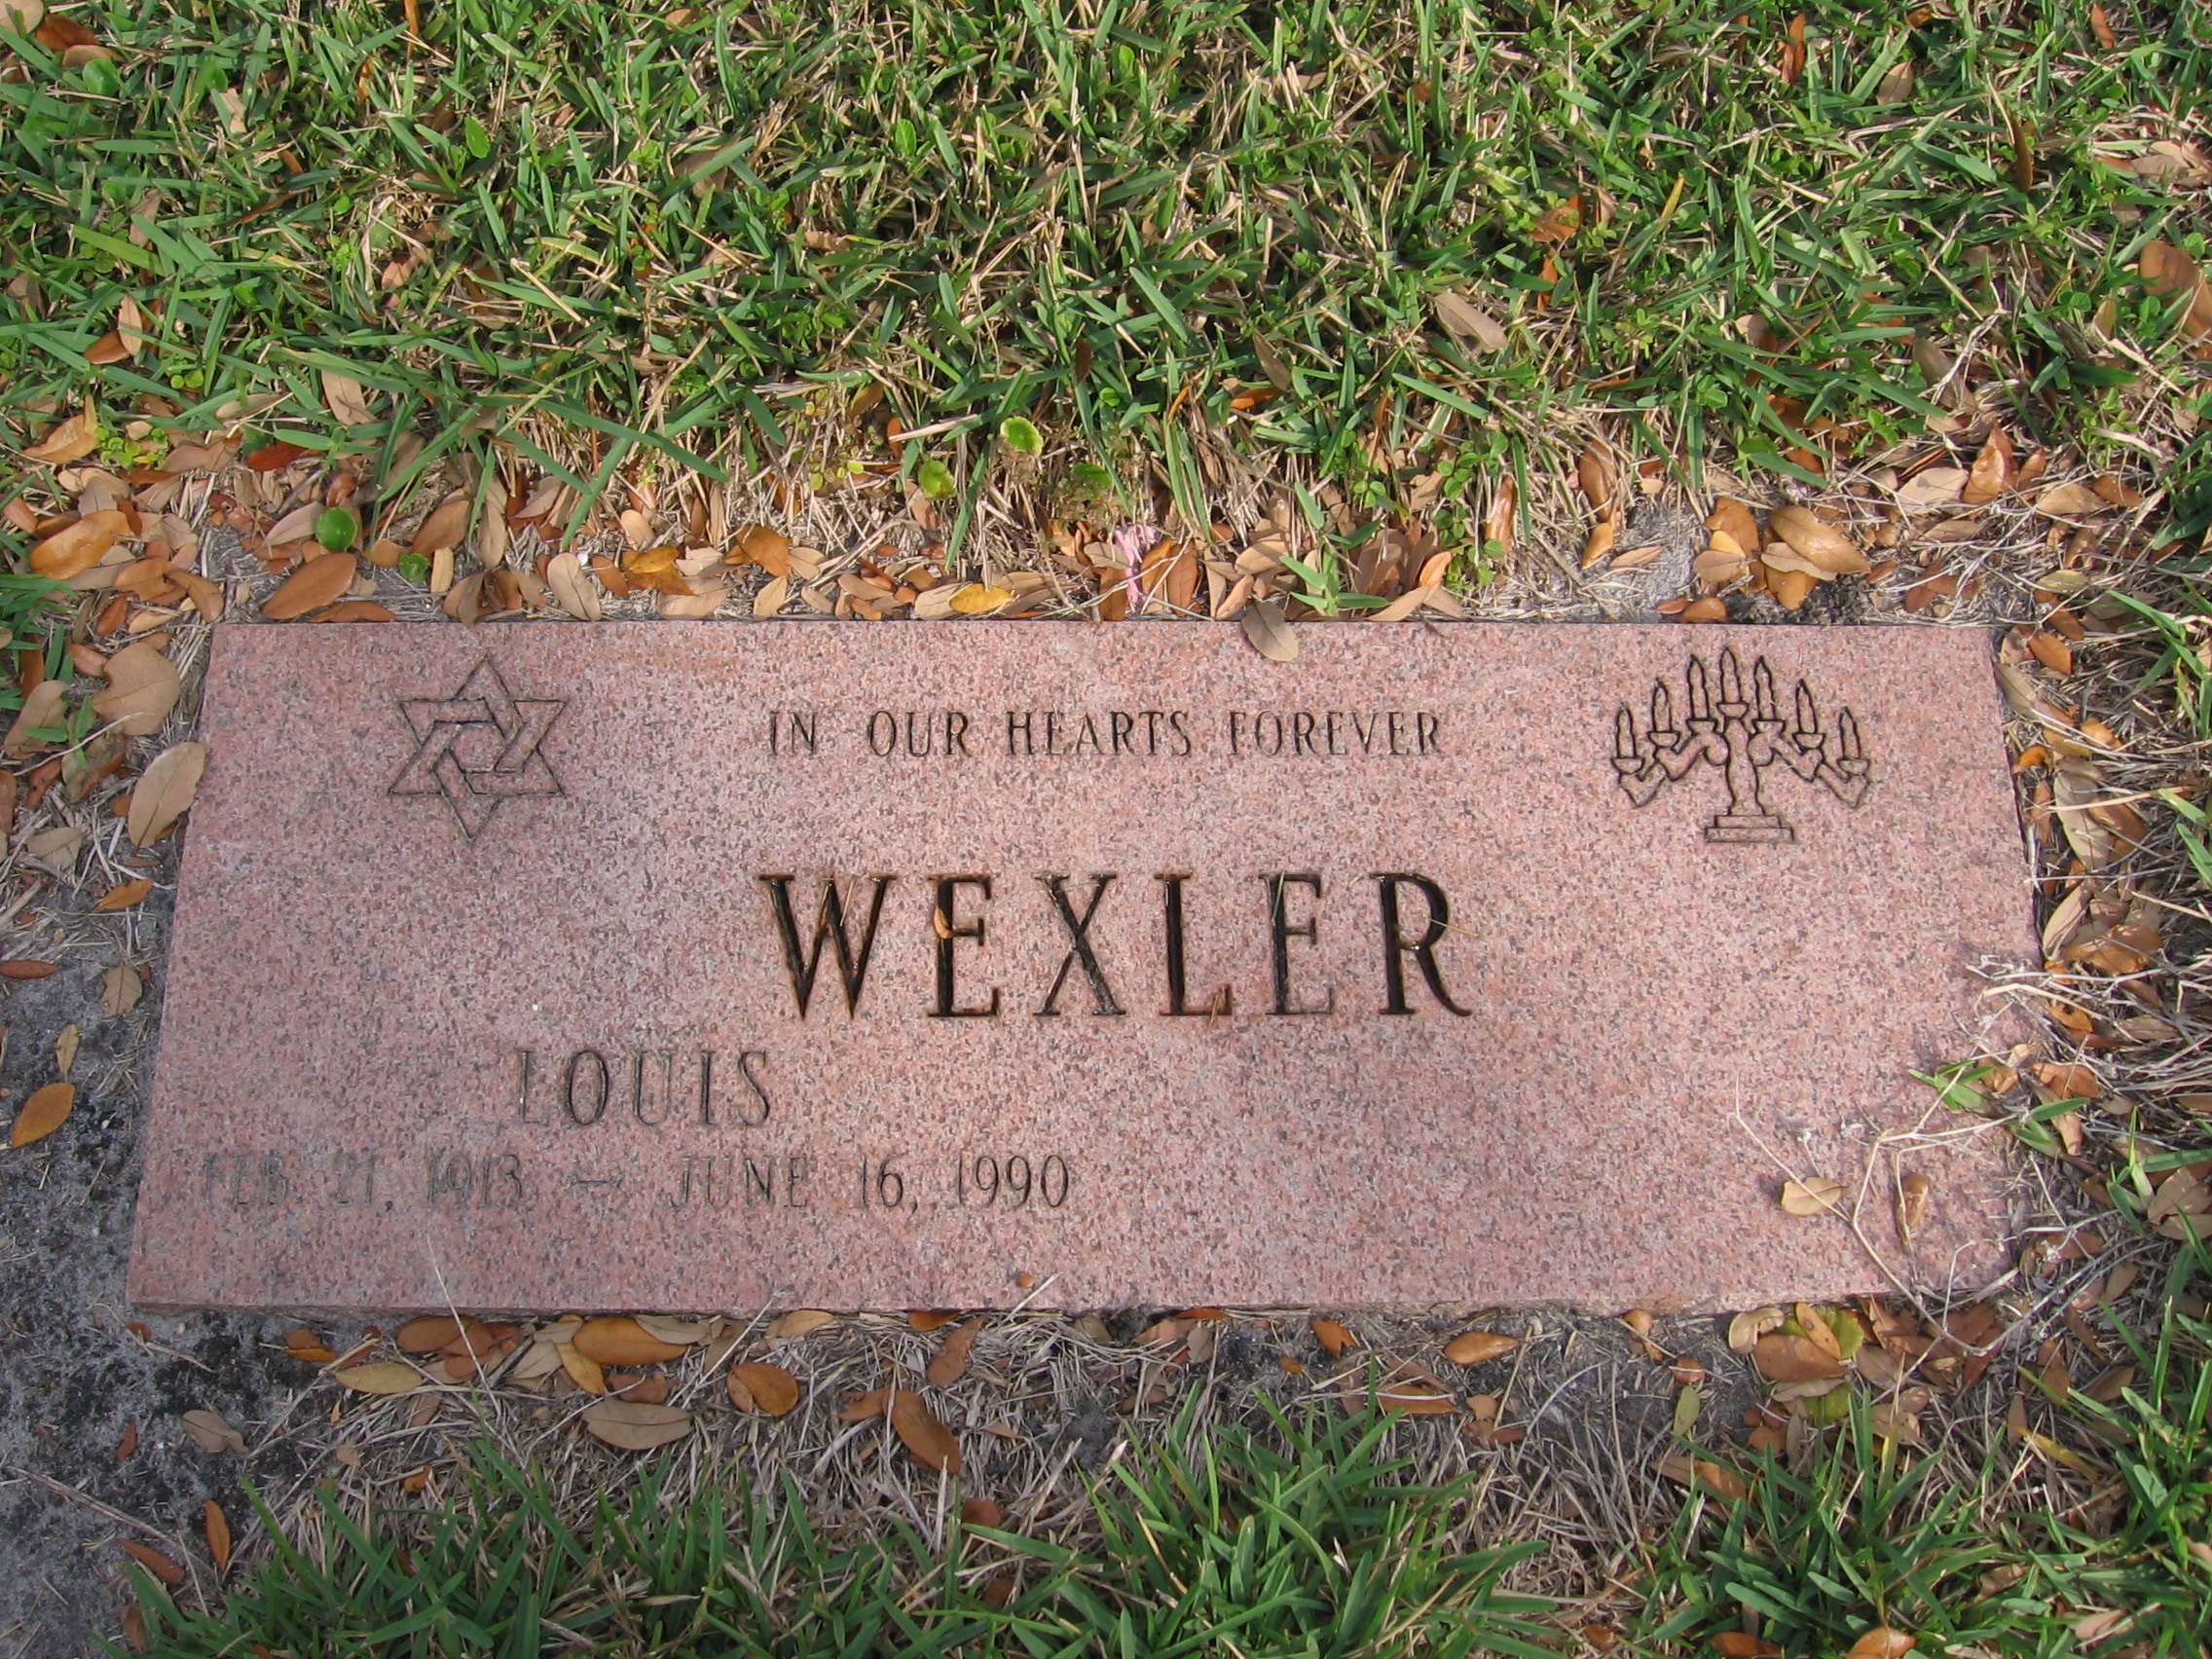 Louis Wexler